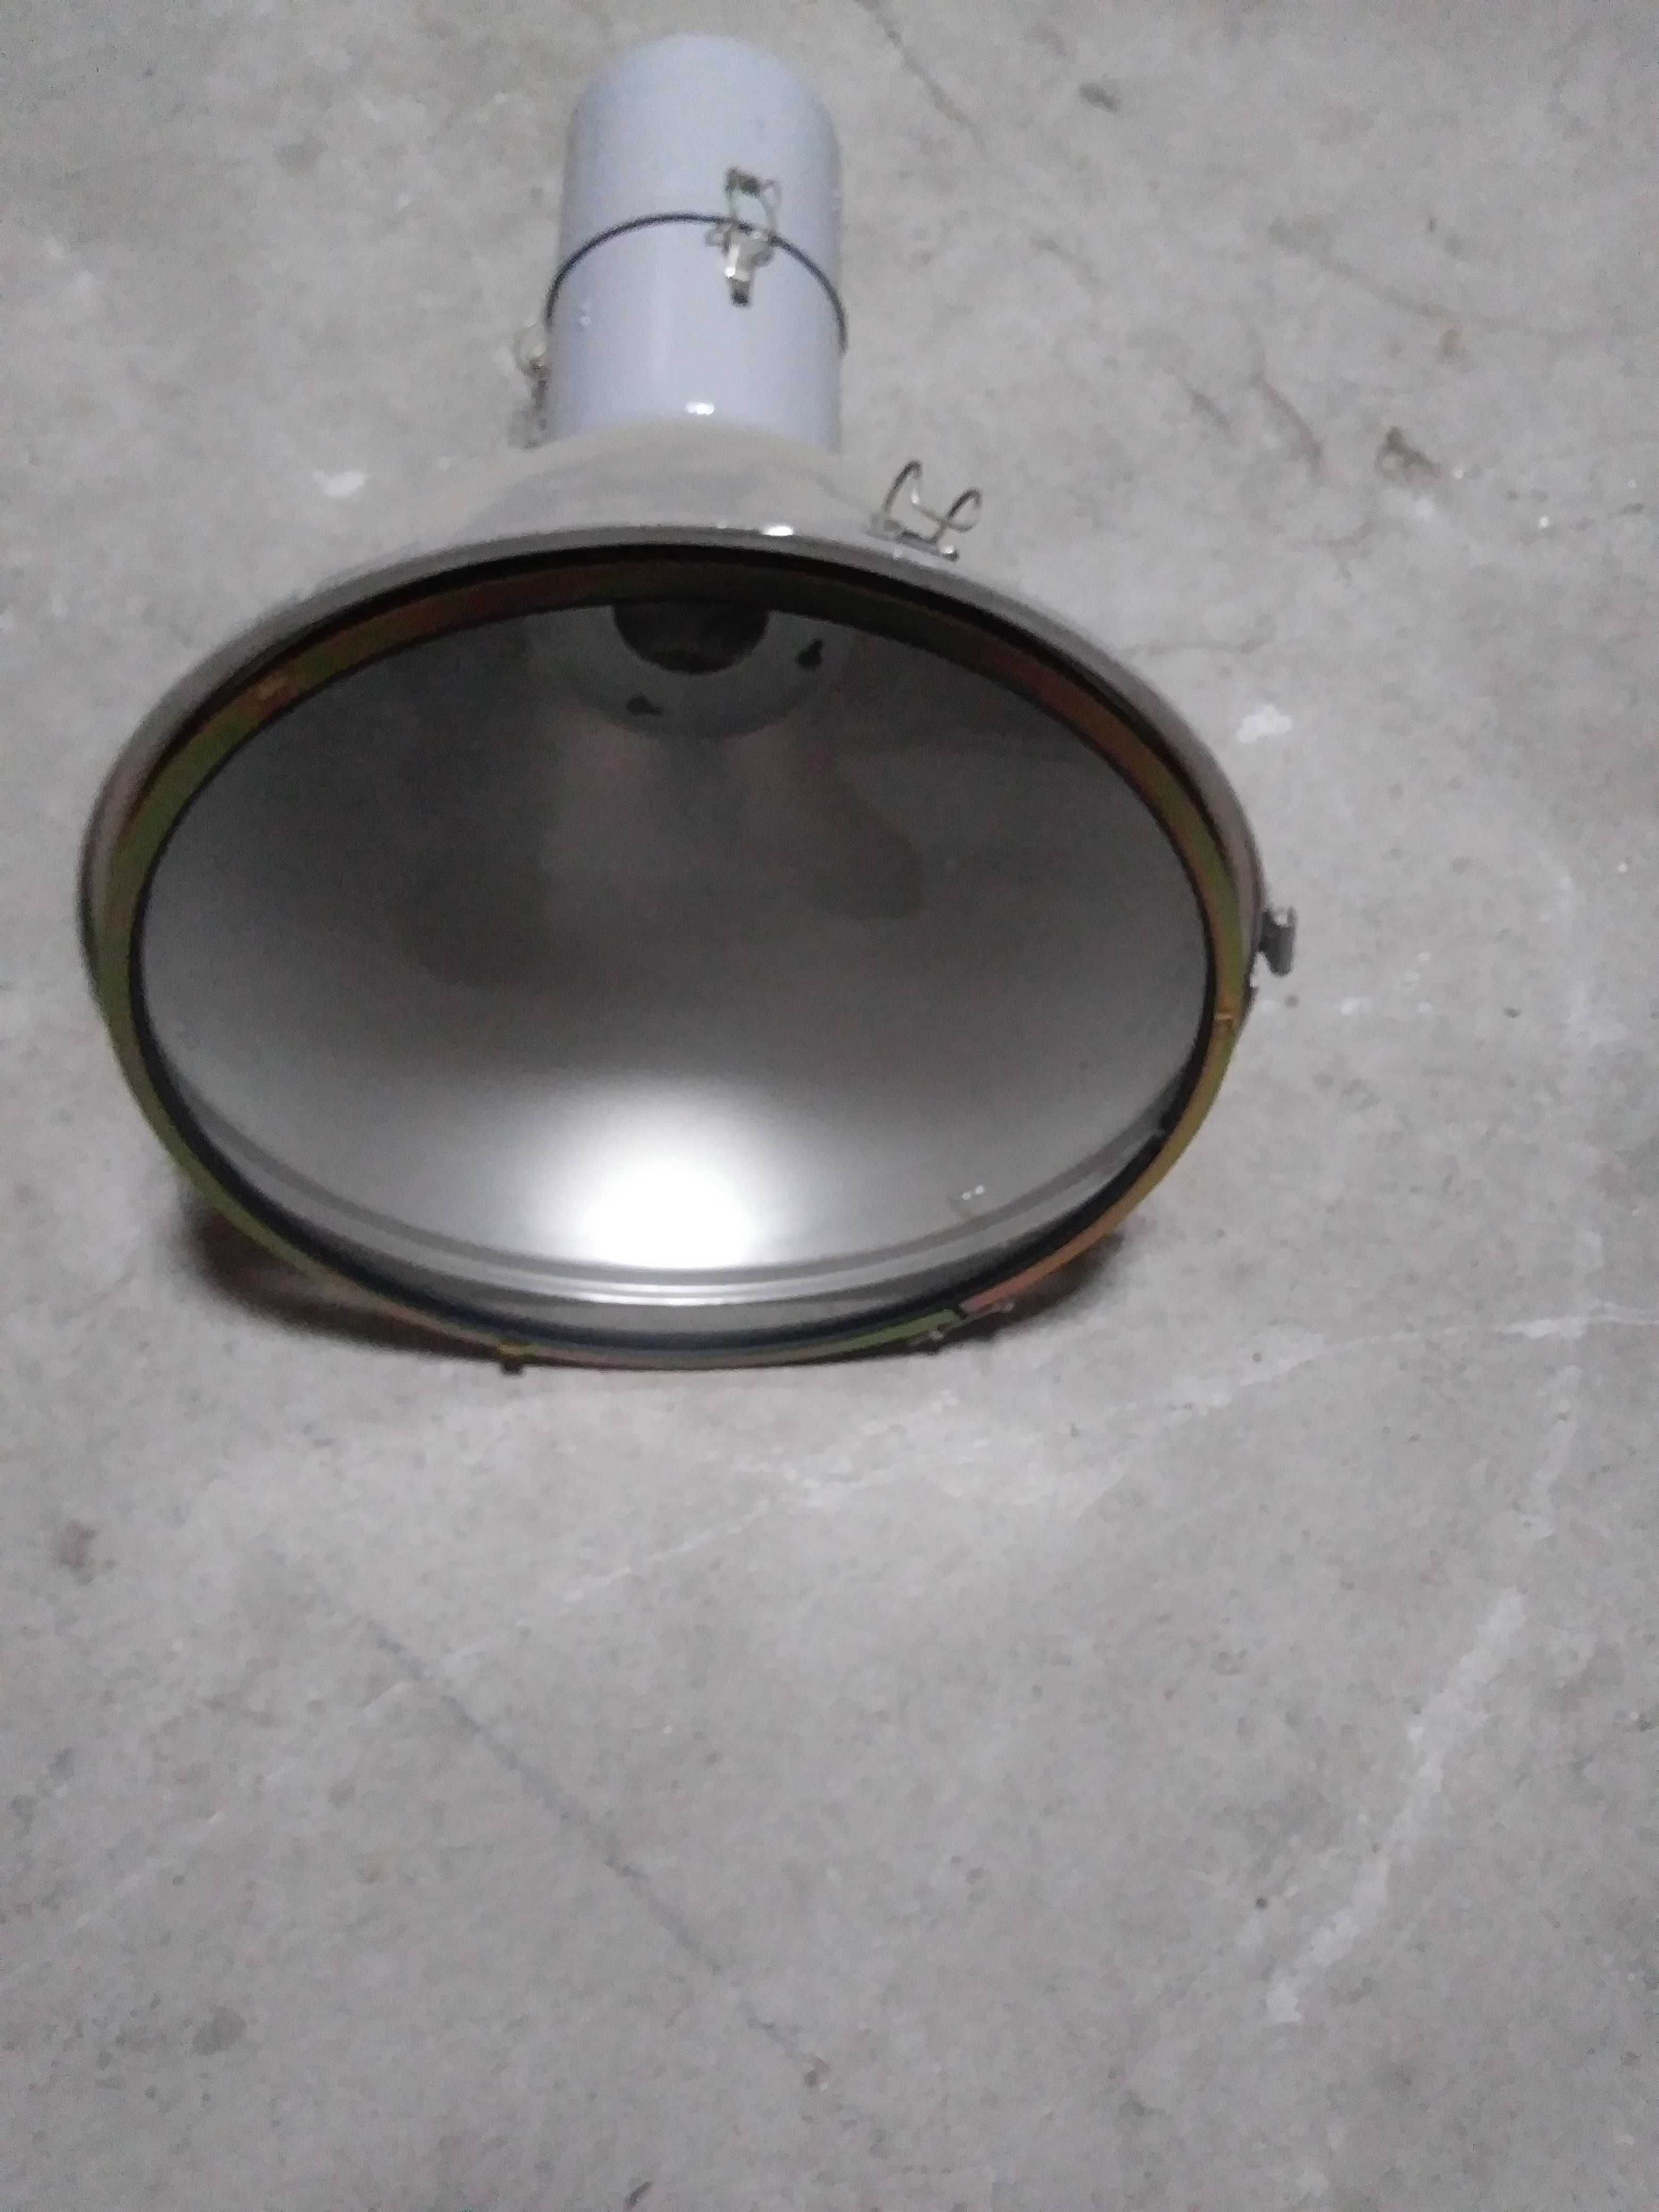 Lampa przemysłowa OPS-250-001